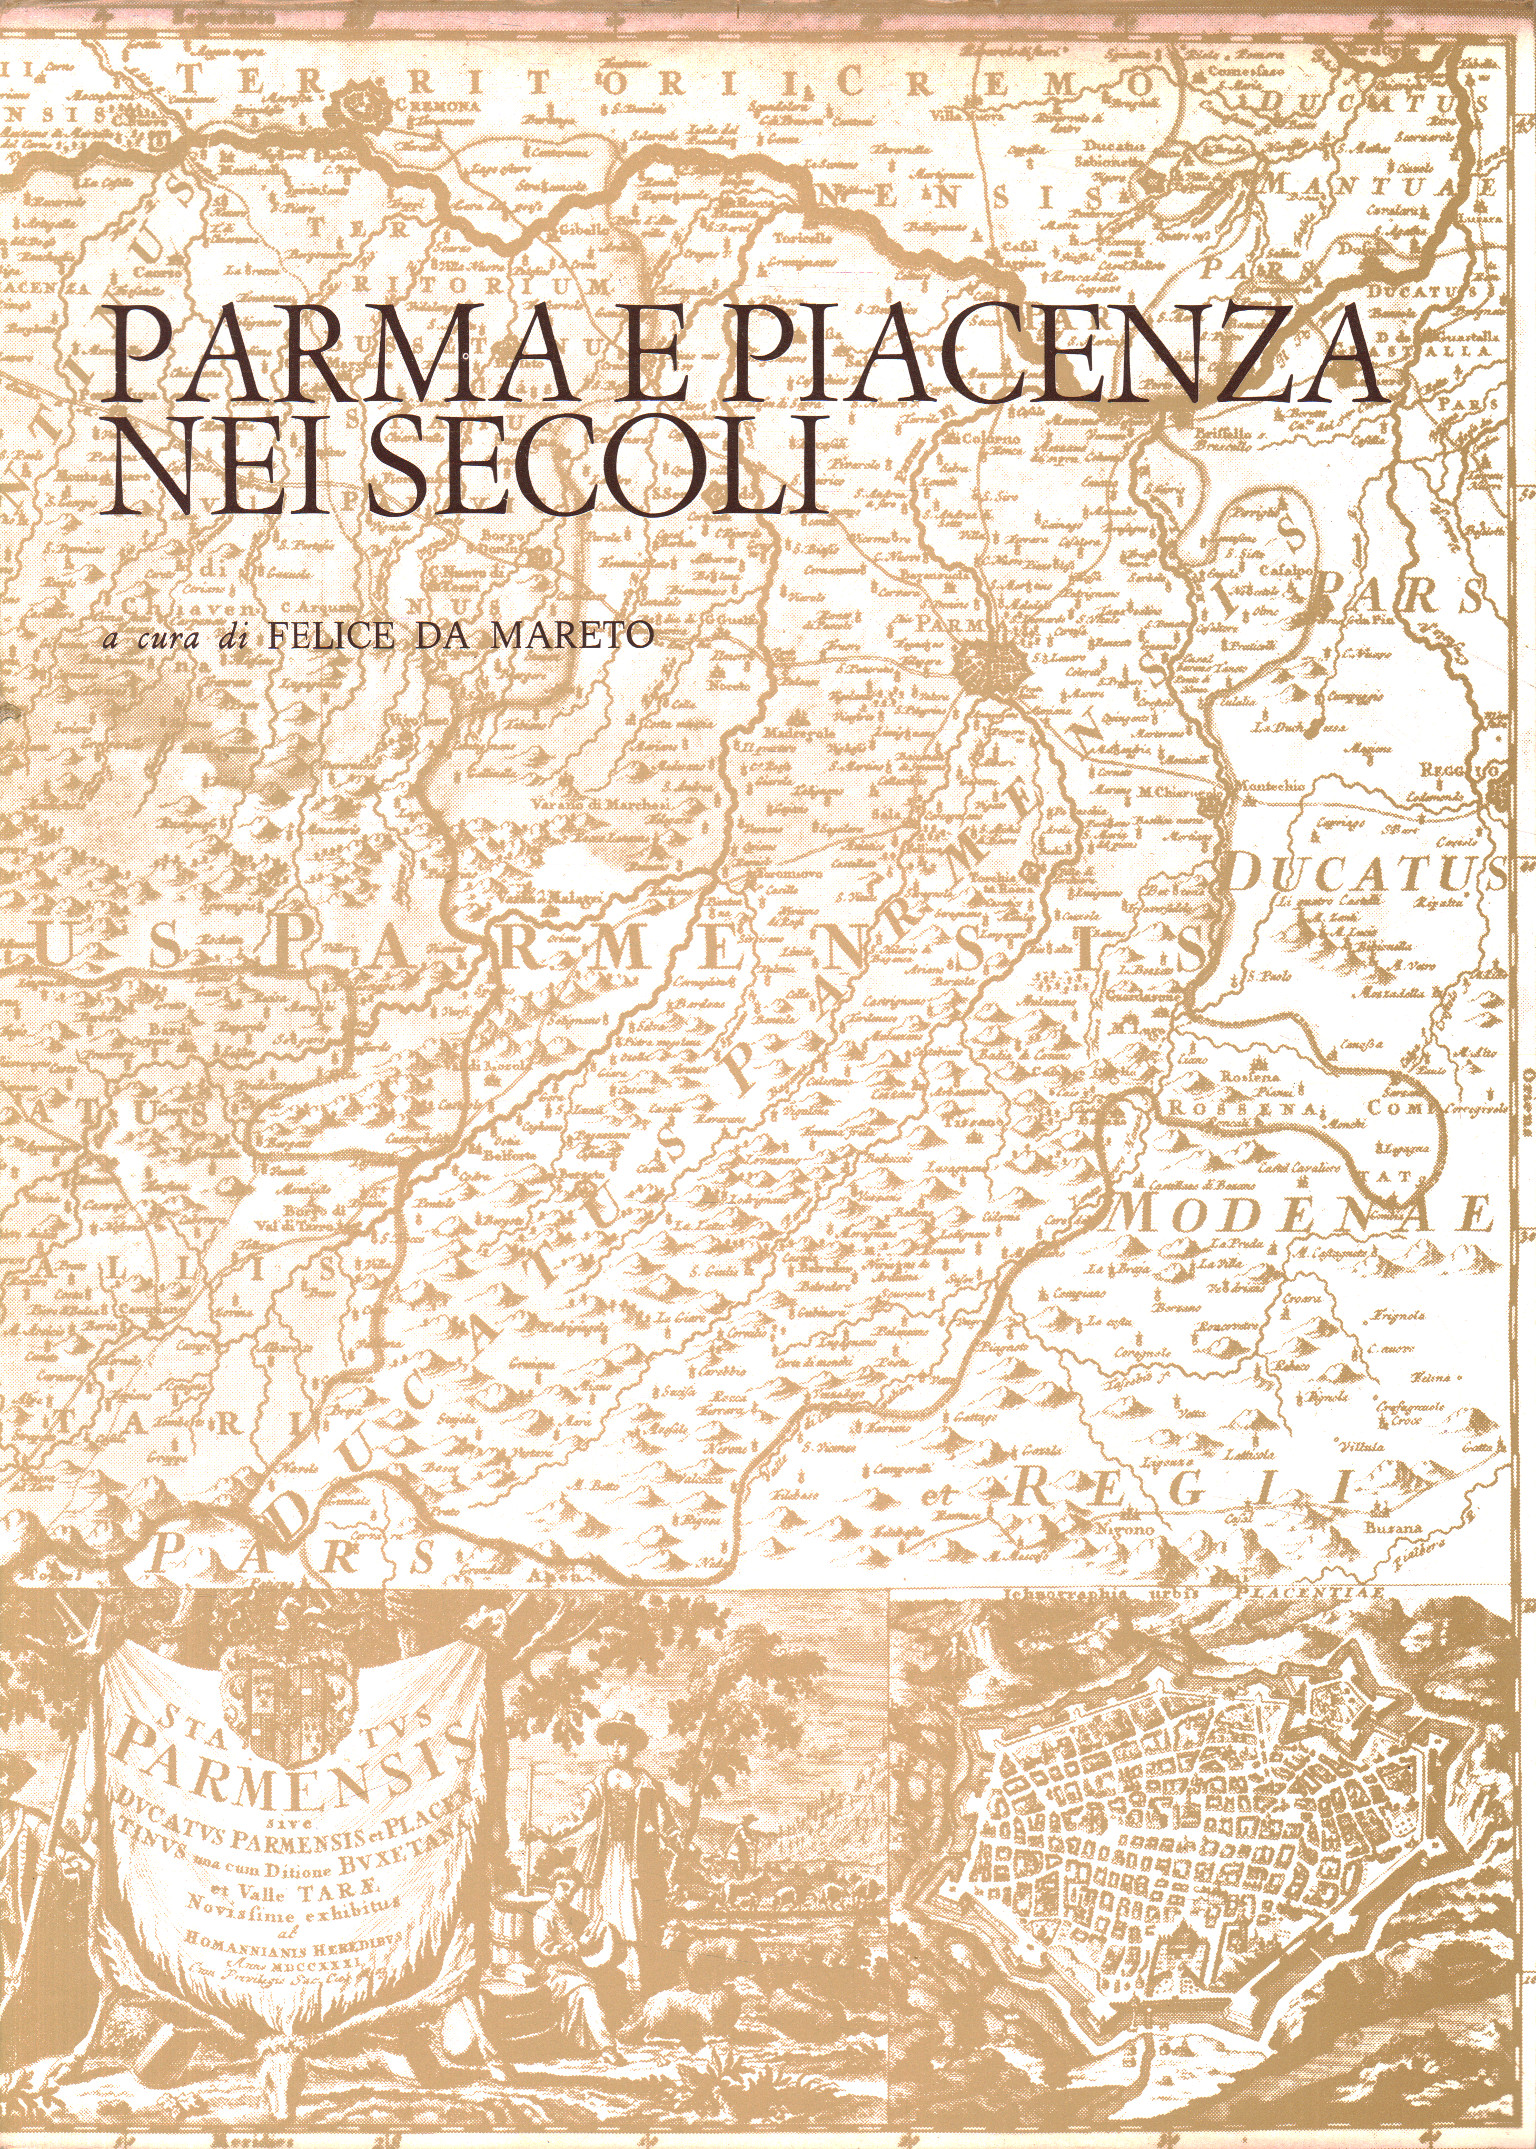 Parma y Piacenza a lo largo de los siglos